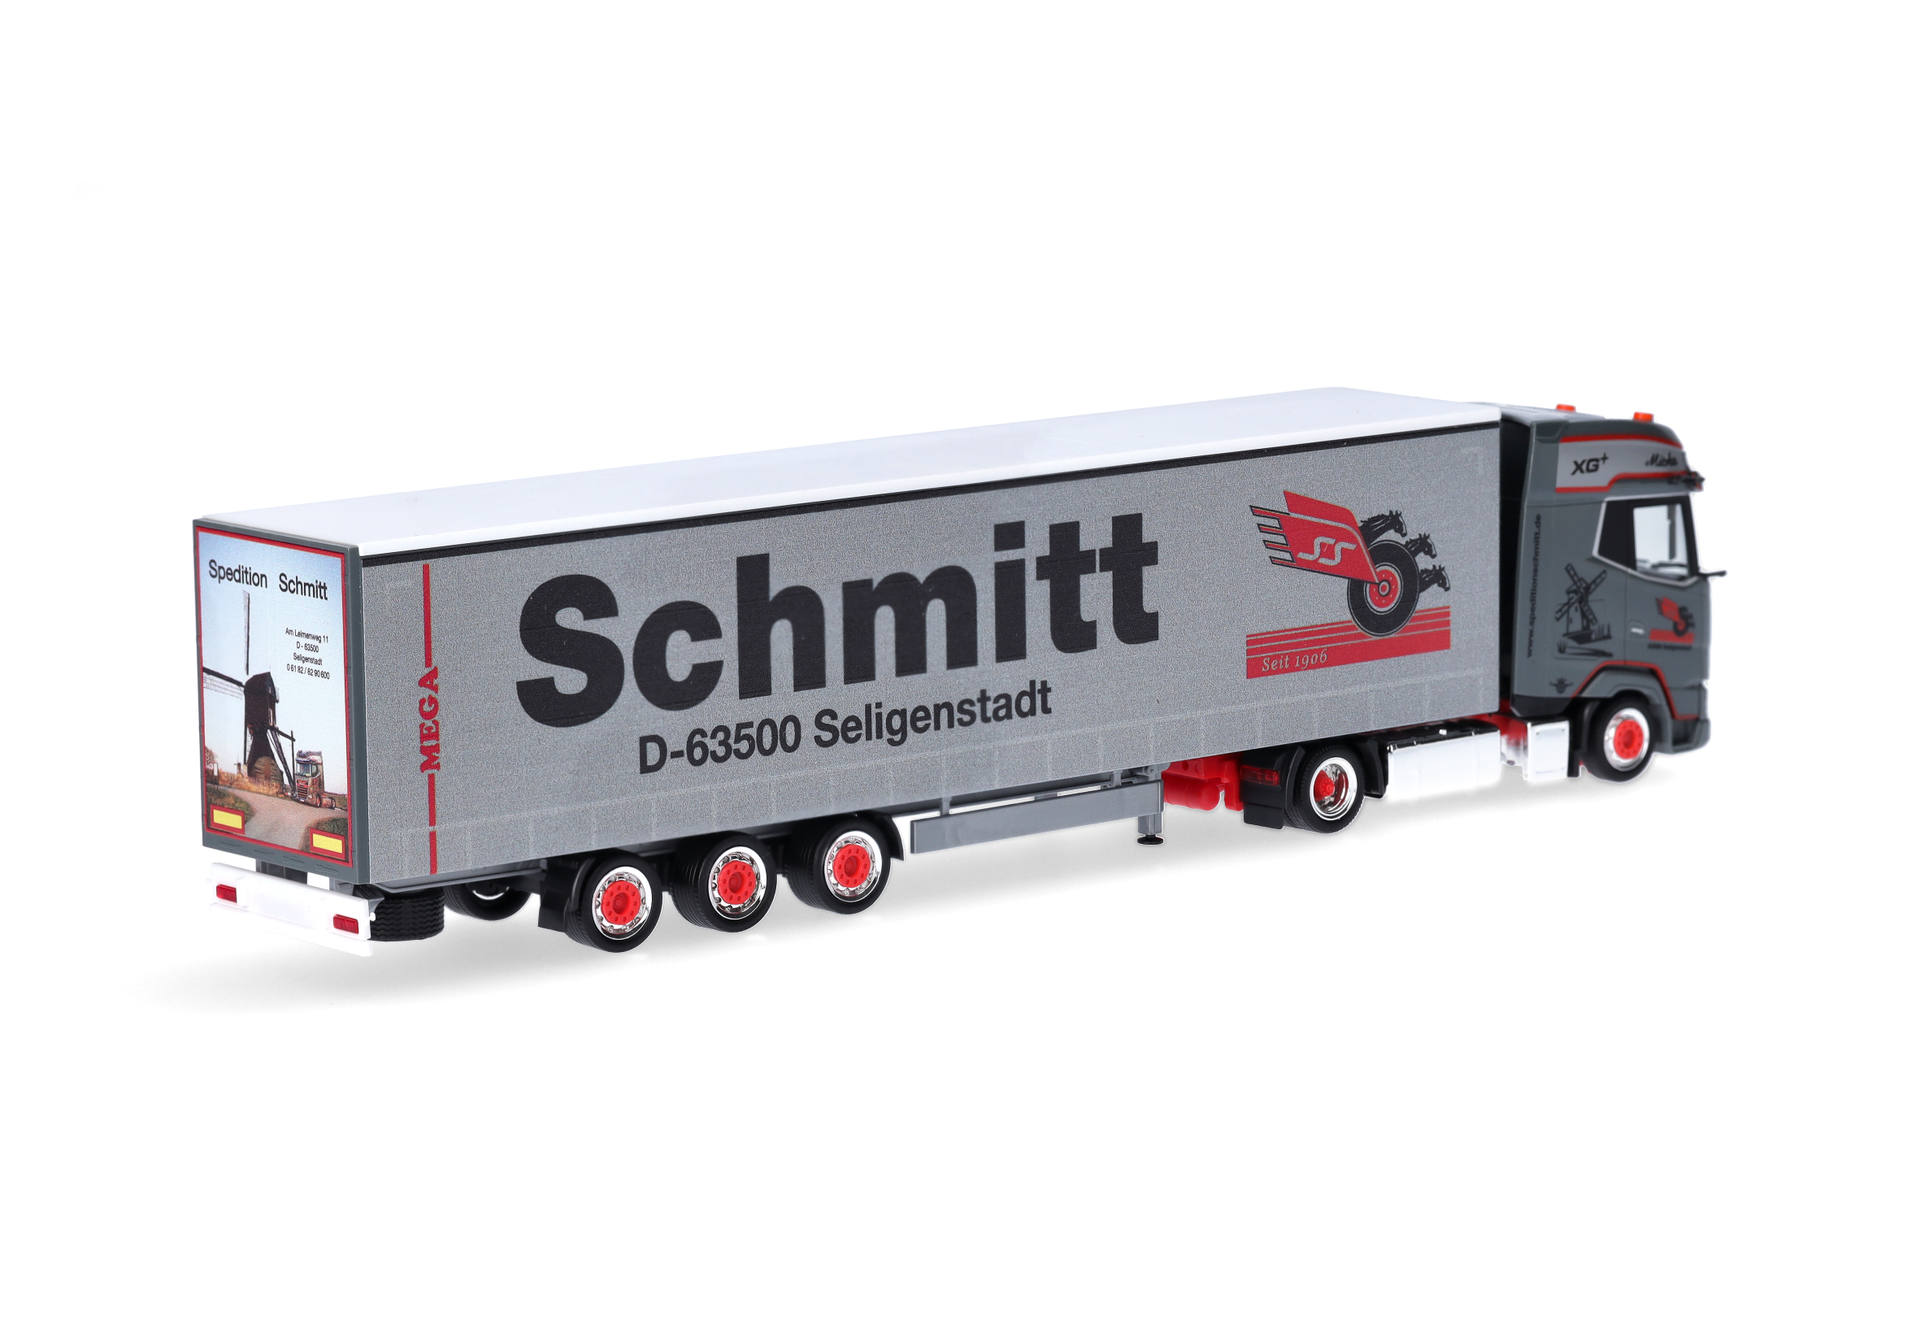 DAF XG+ volume semitrailer "Schmitt Seligenstadt" (Hesse/Seligenstadt)